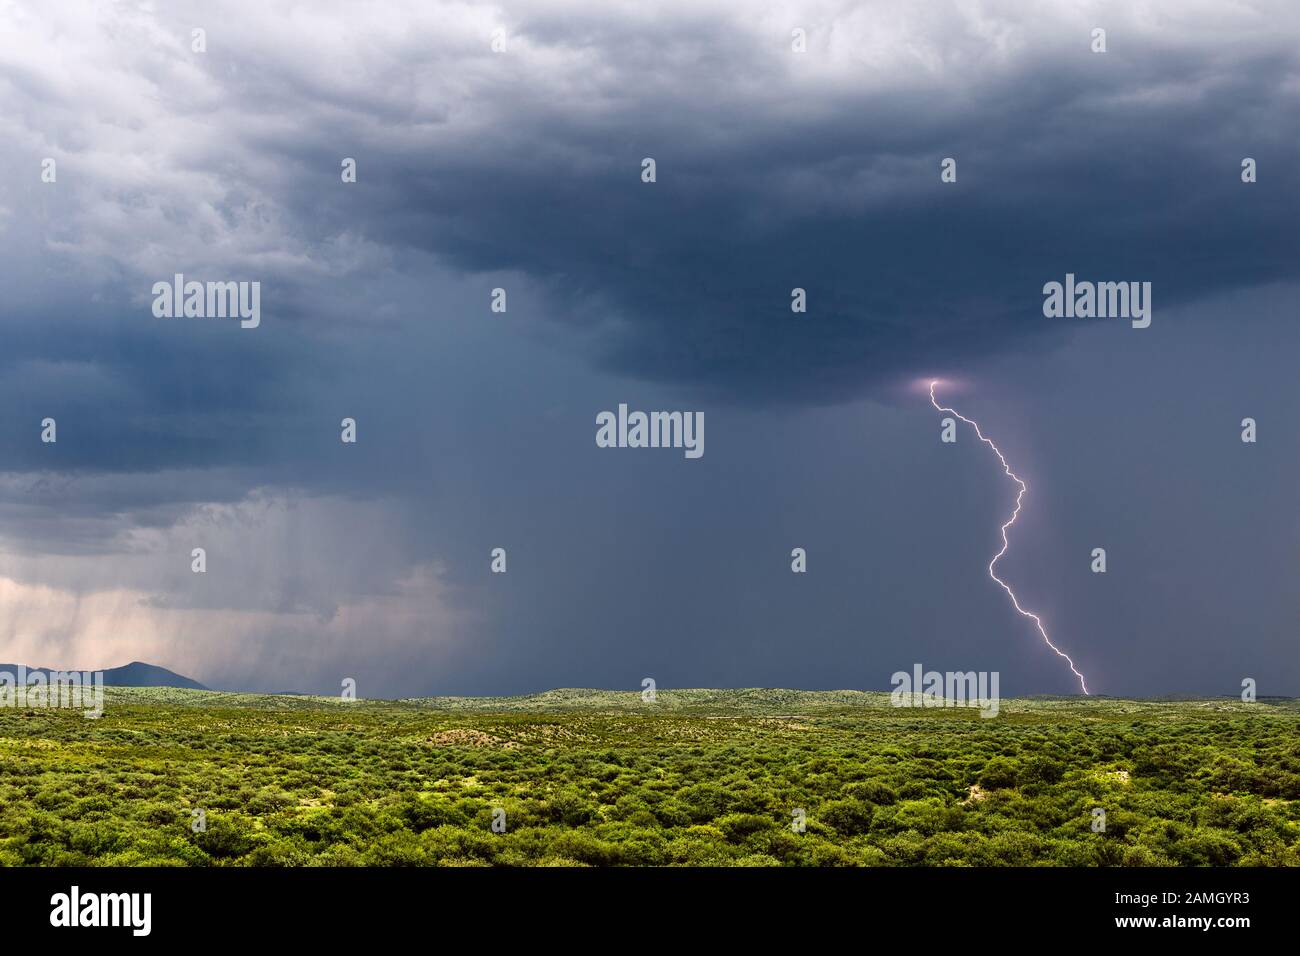 Ein Monsunsturm in Arizona mit Blitz, dunklem Himmel und starkem Regen nähert sich Tucson Stockfoto